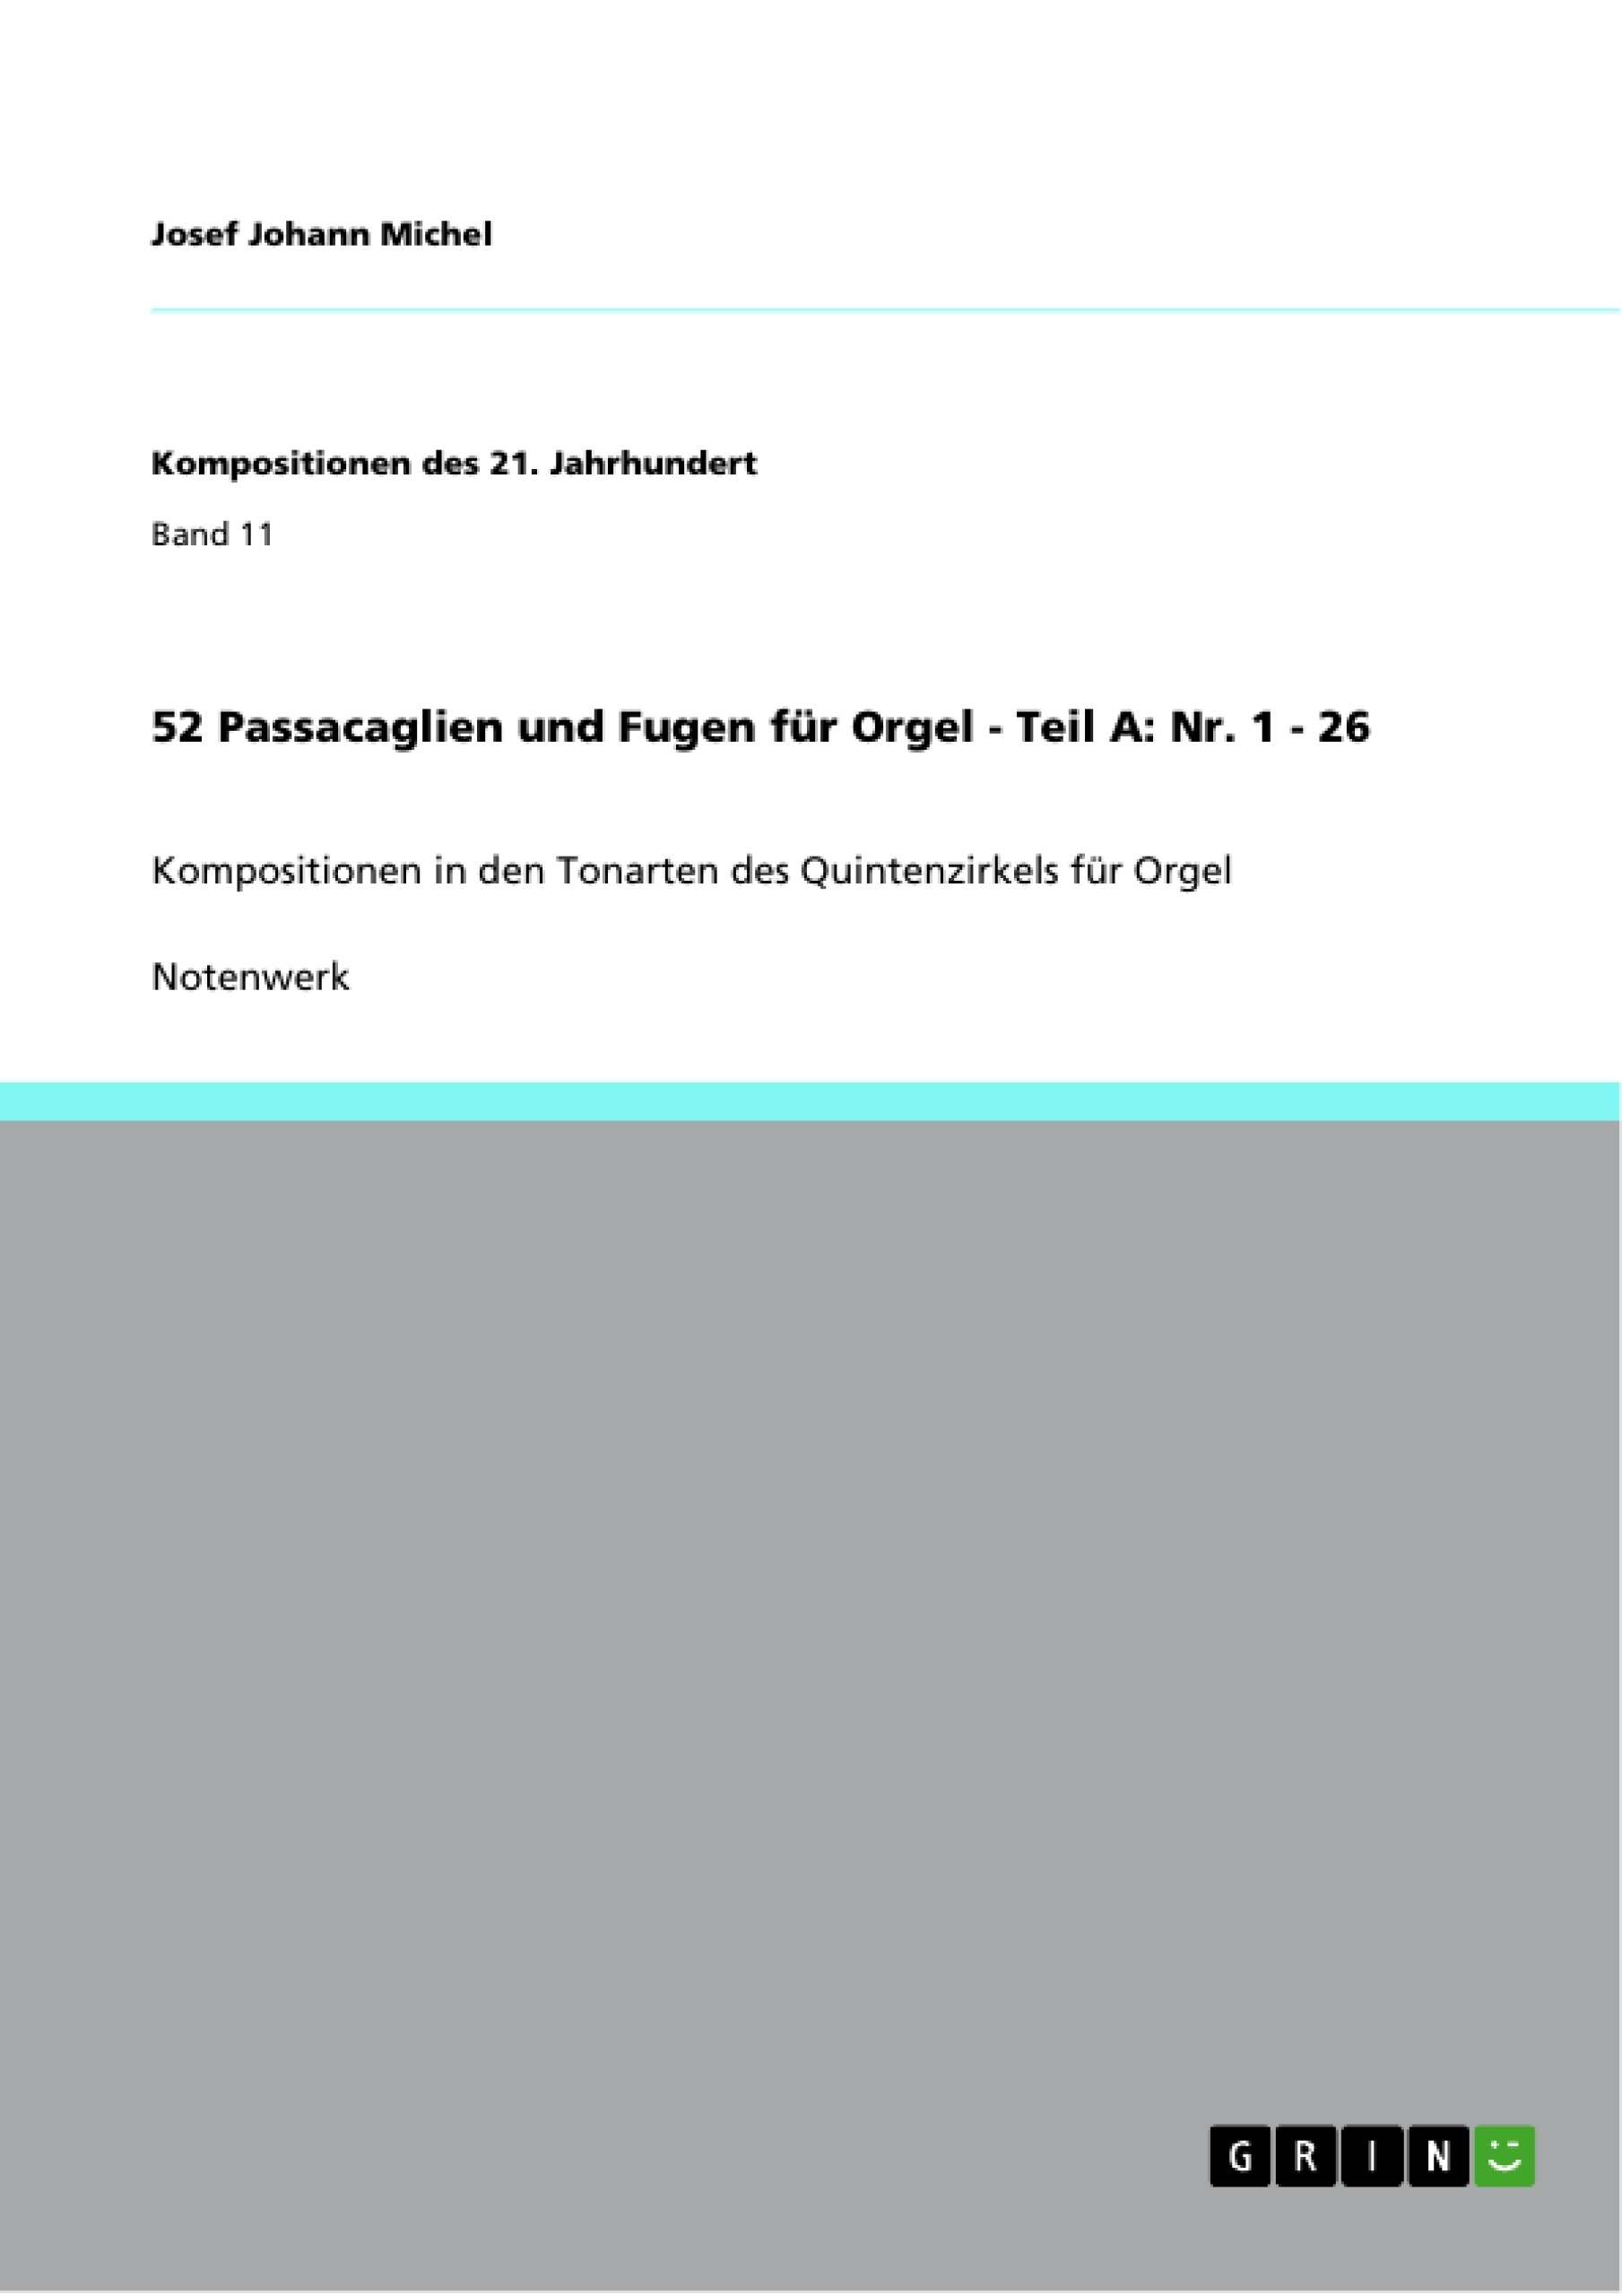 Title: 52 Passacaglien und Fugen für Orgel - Teil A: Nr. 1 - 26